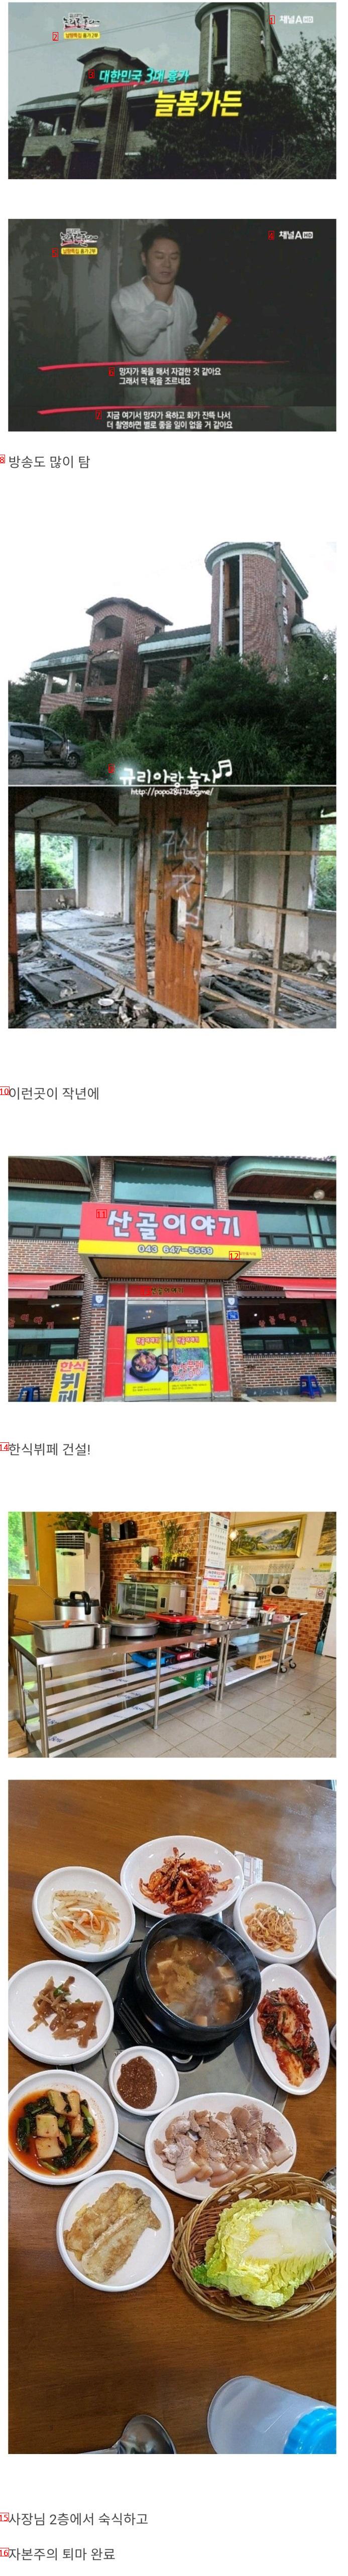 大韓民国3大凶家、ヌルボム家の状況